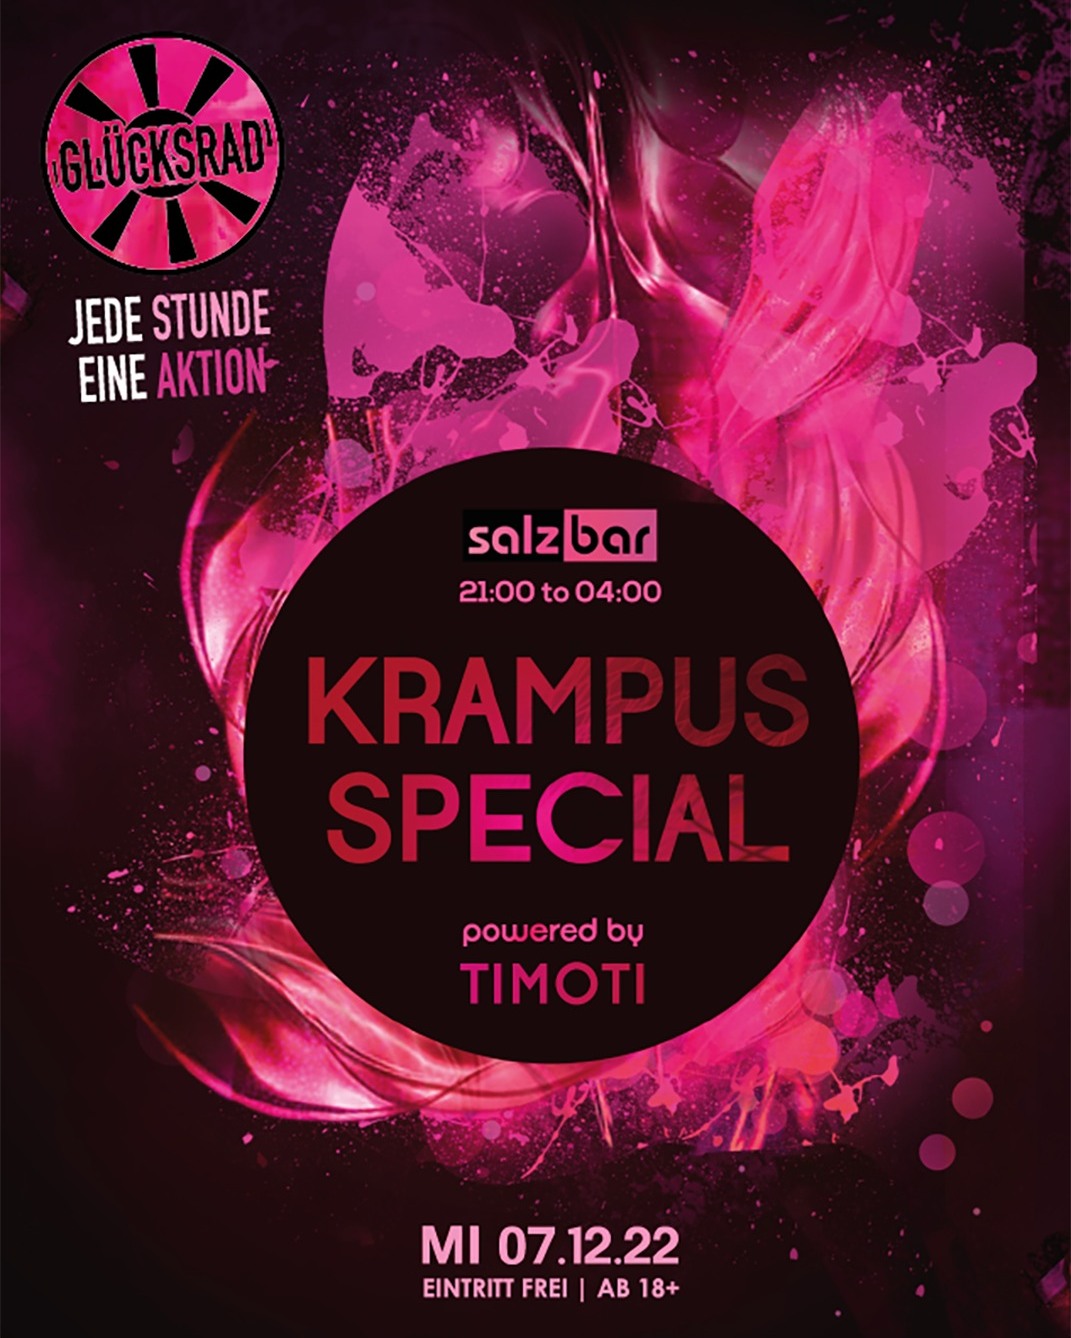 Krampus Special!👺 Jede Stunde eine Aktion!

#krampus #glücksrad #salzbarvienna #getsalted  #viennabar #partypeople #partylife #livedj #livedjs #dj #djlive #djslovers #viennablogger #viennalove #wien #wienliebe #party